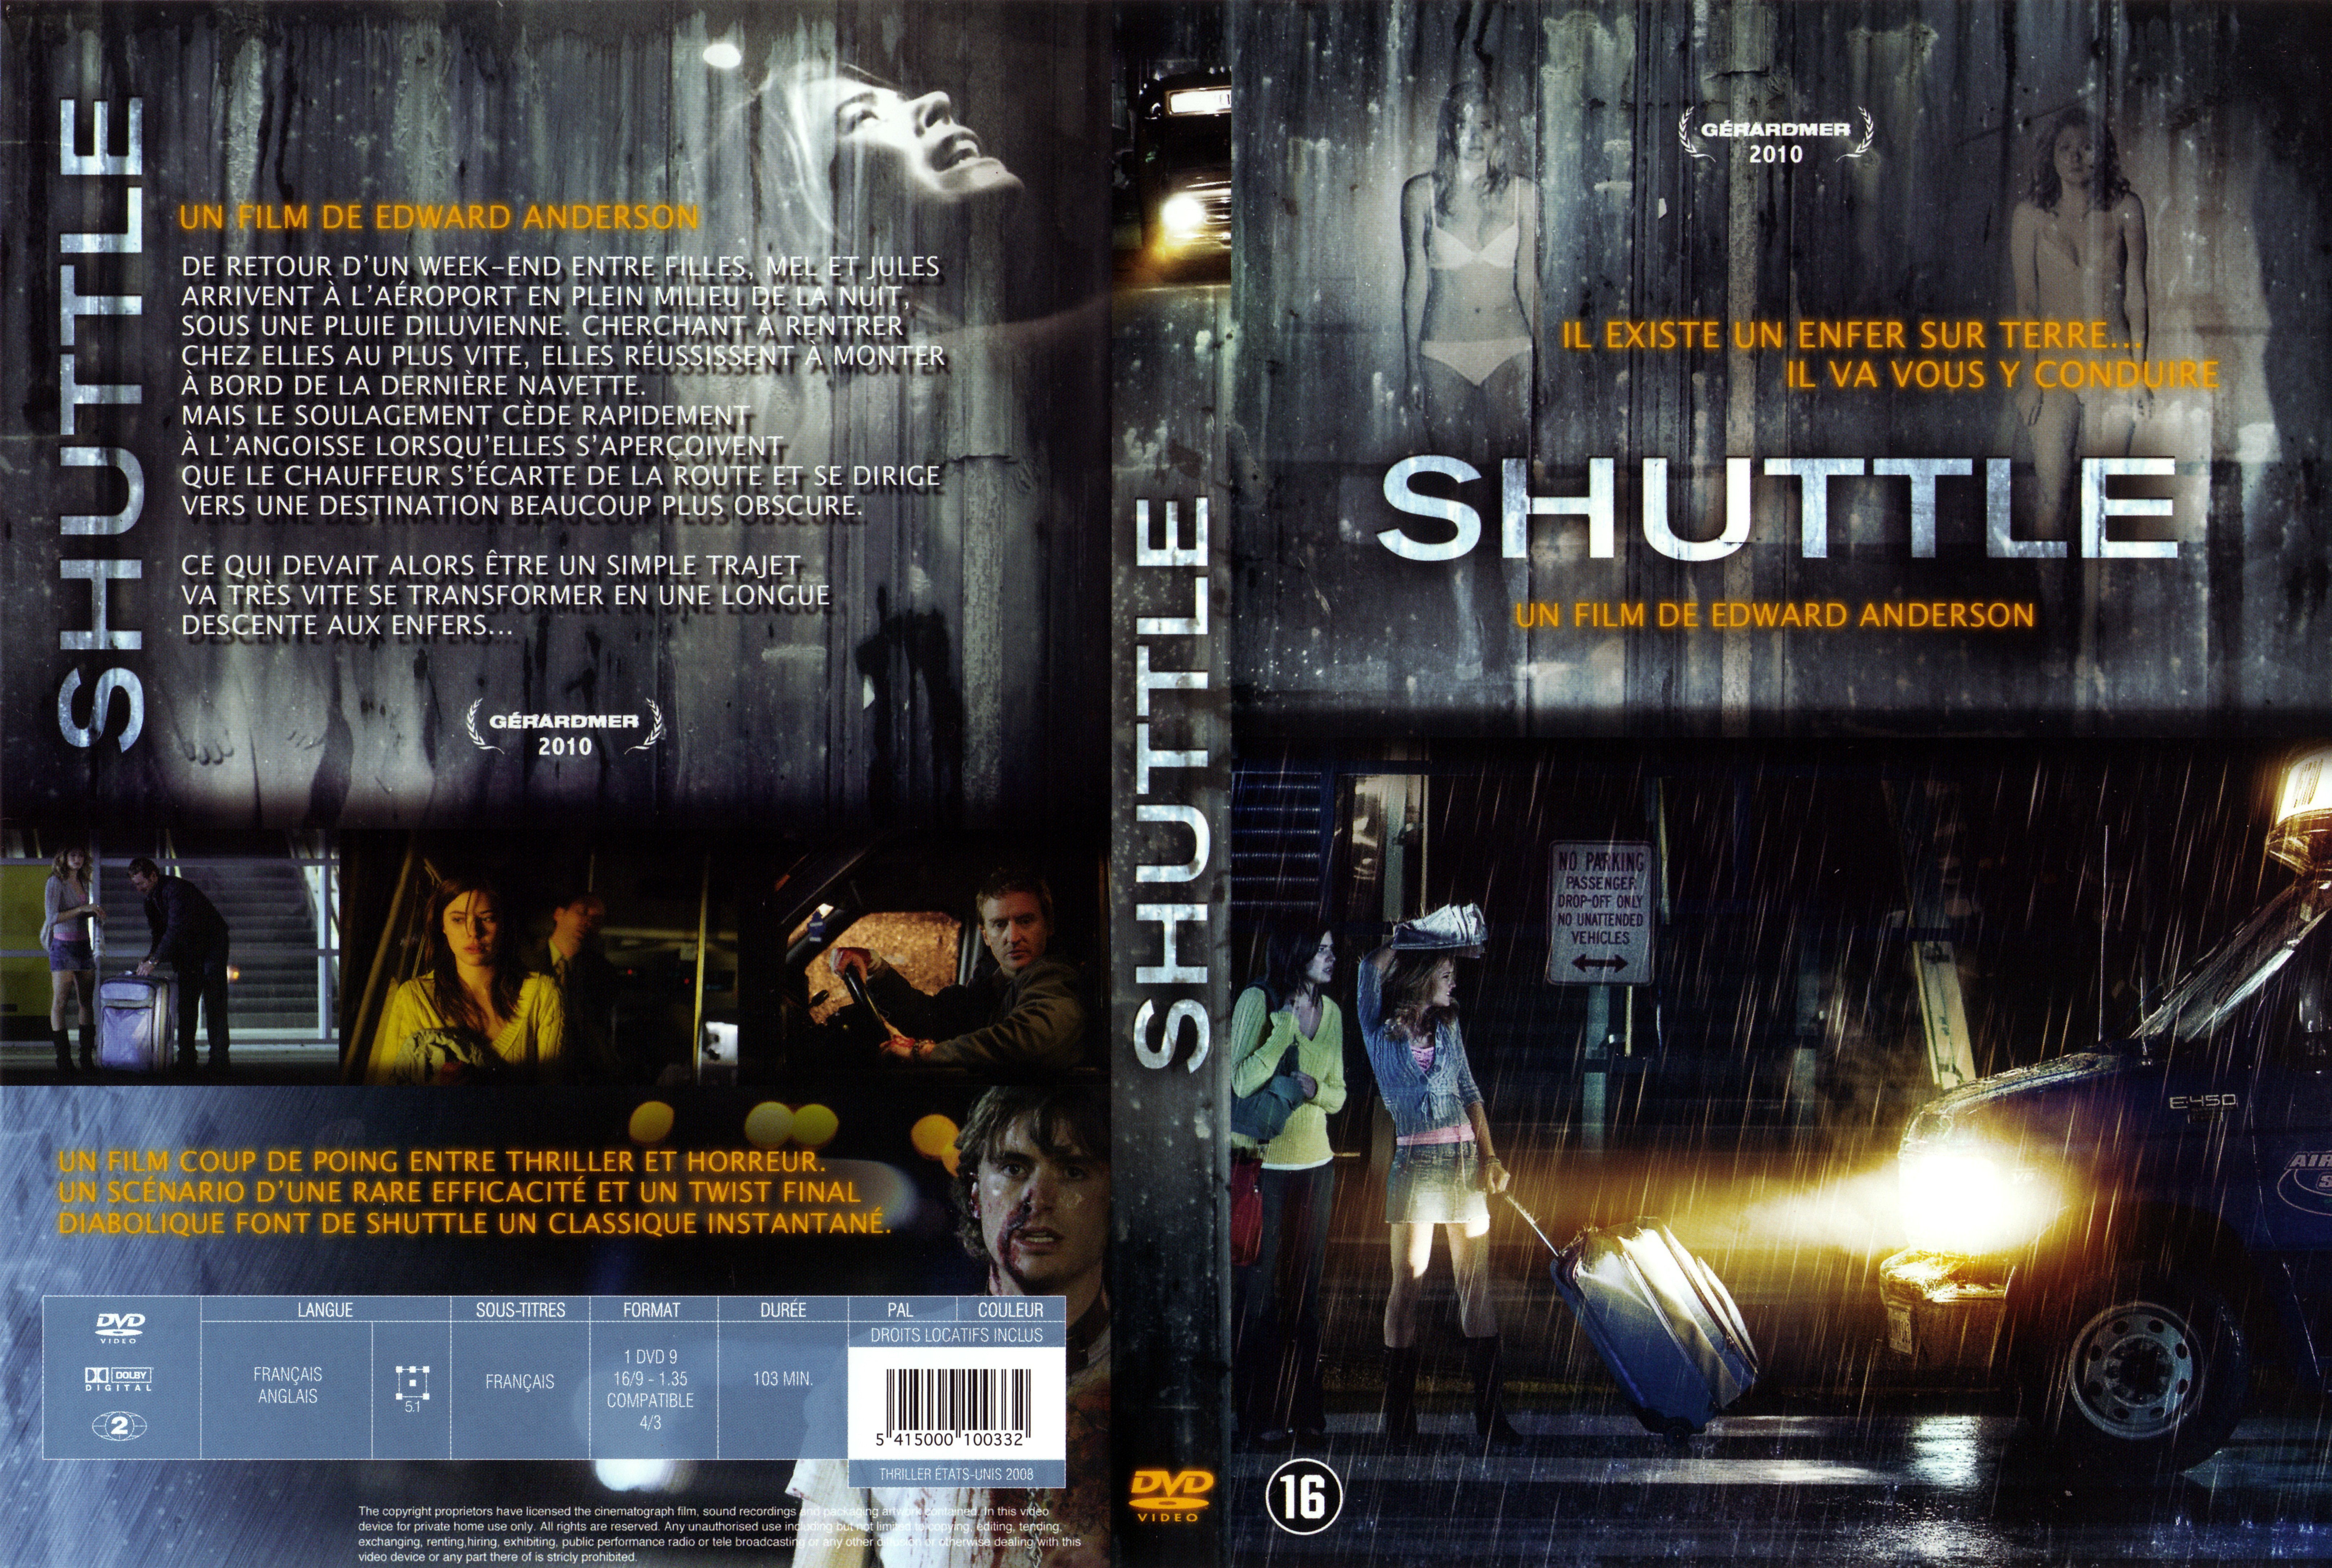 Jaquette DVD Shuttle v2